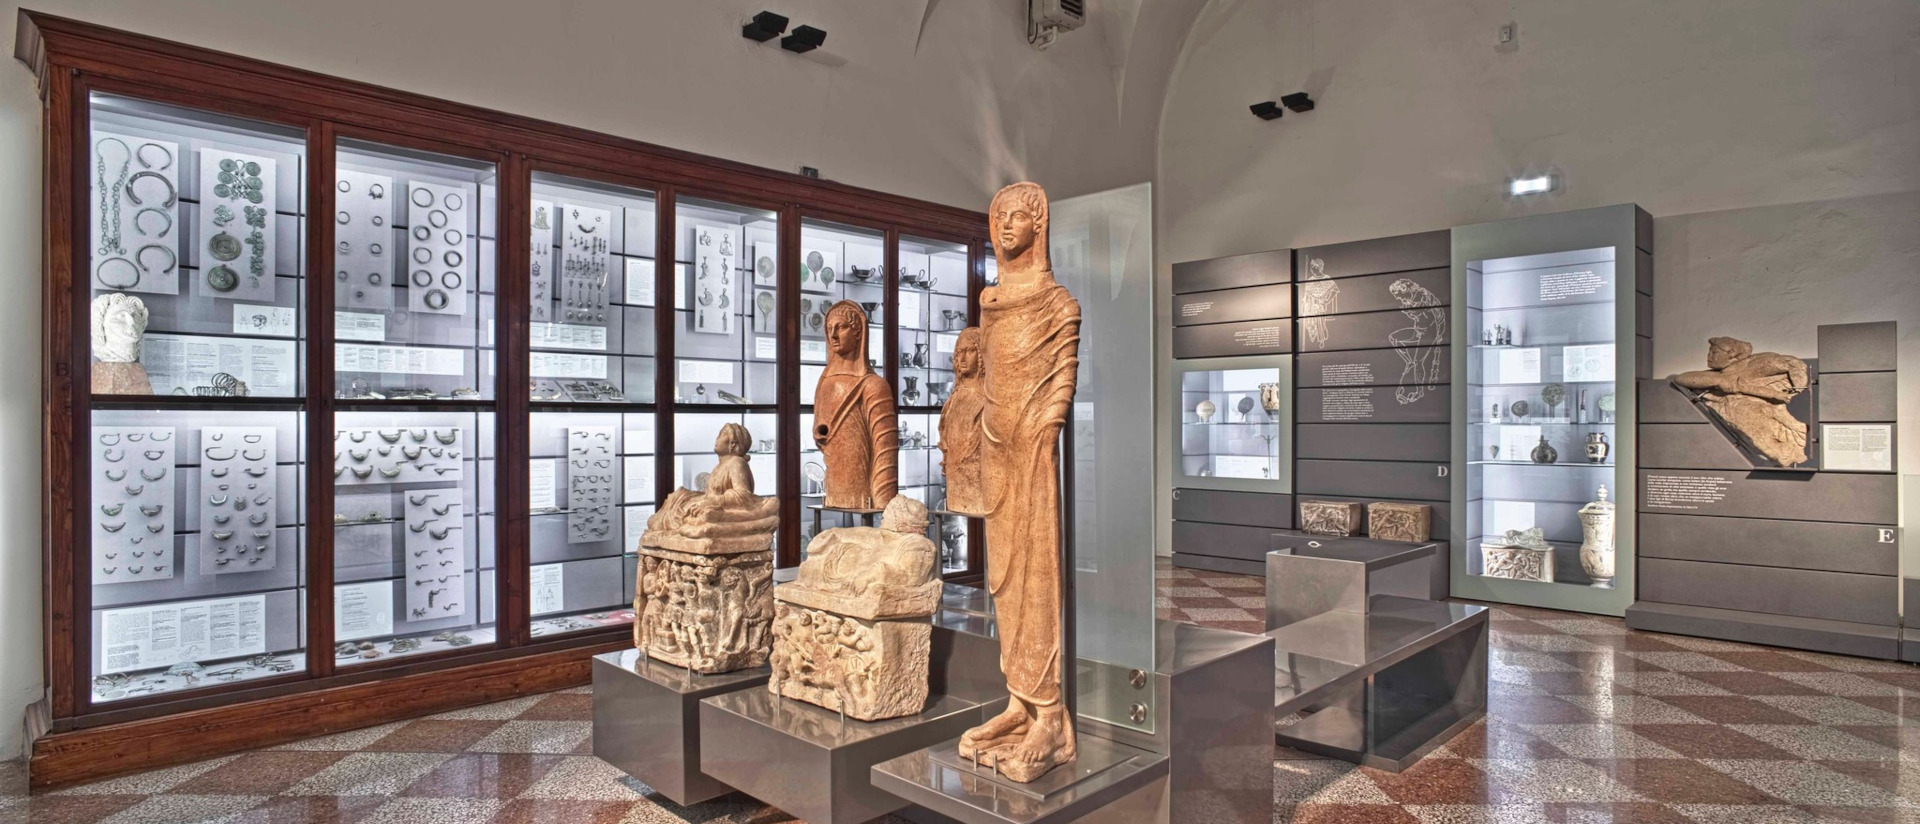 Museo Civico Archeologico di Bologna - Collezione etrusca